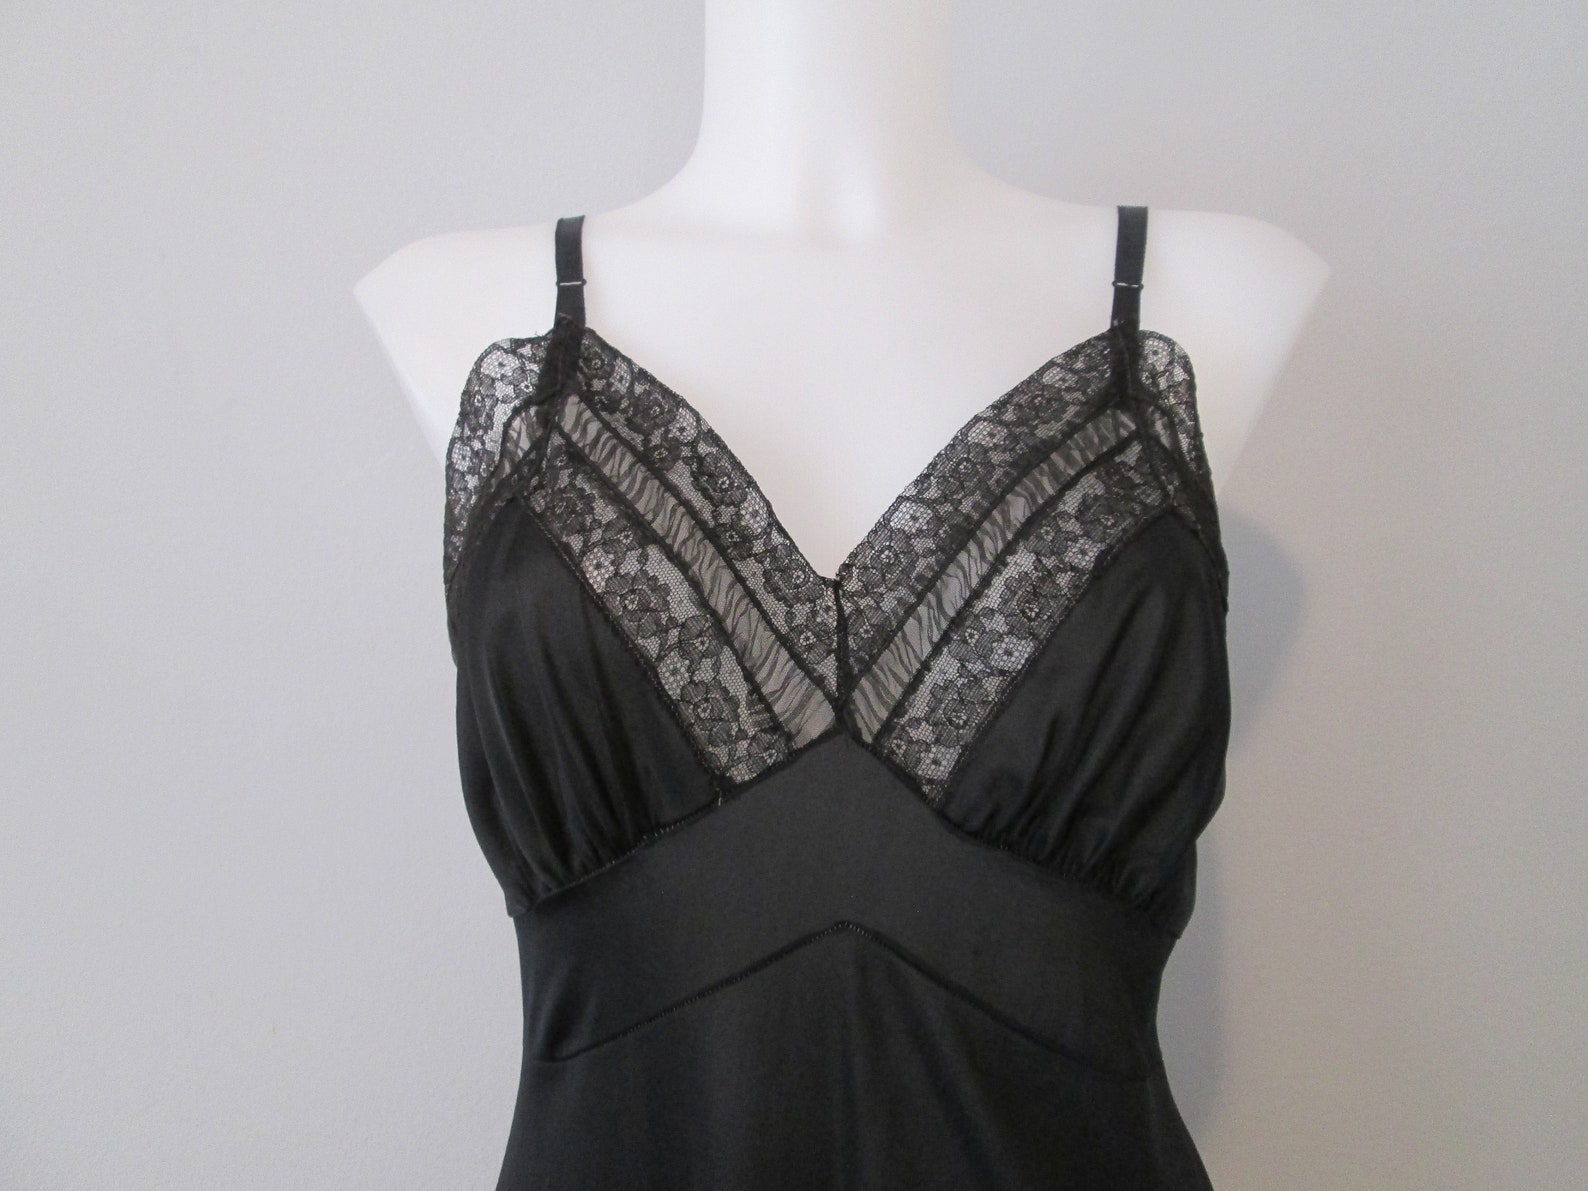 Black Full Dress Slip Vintage 1960s Lace Lingerie | Etsy